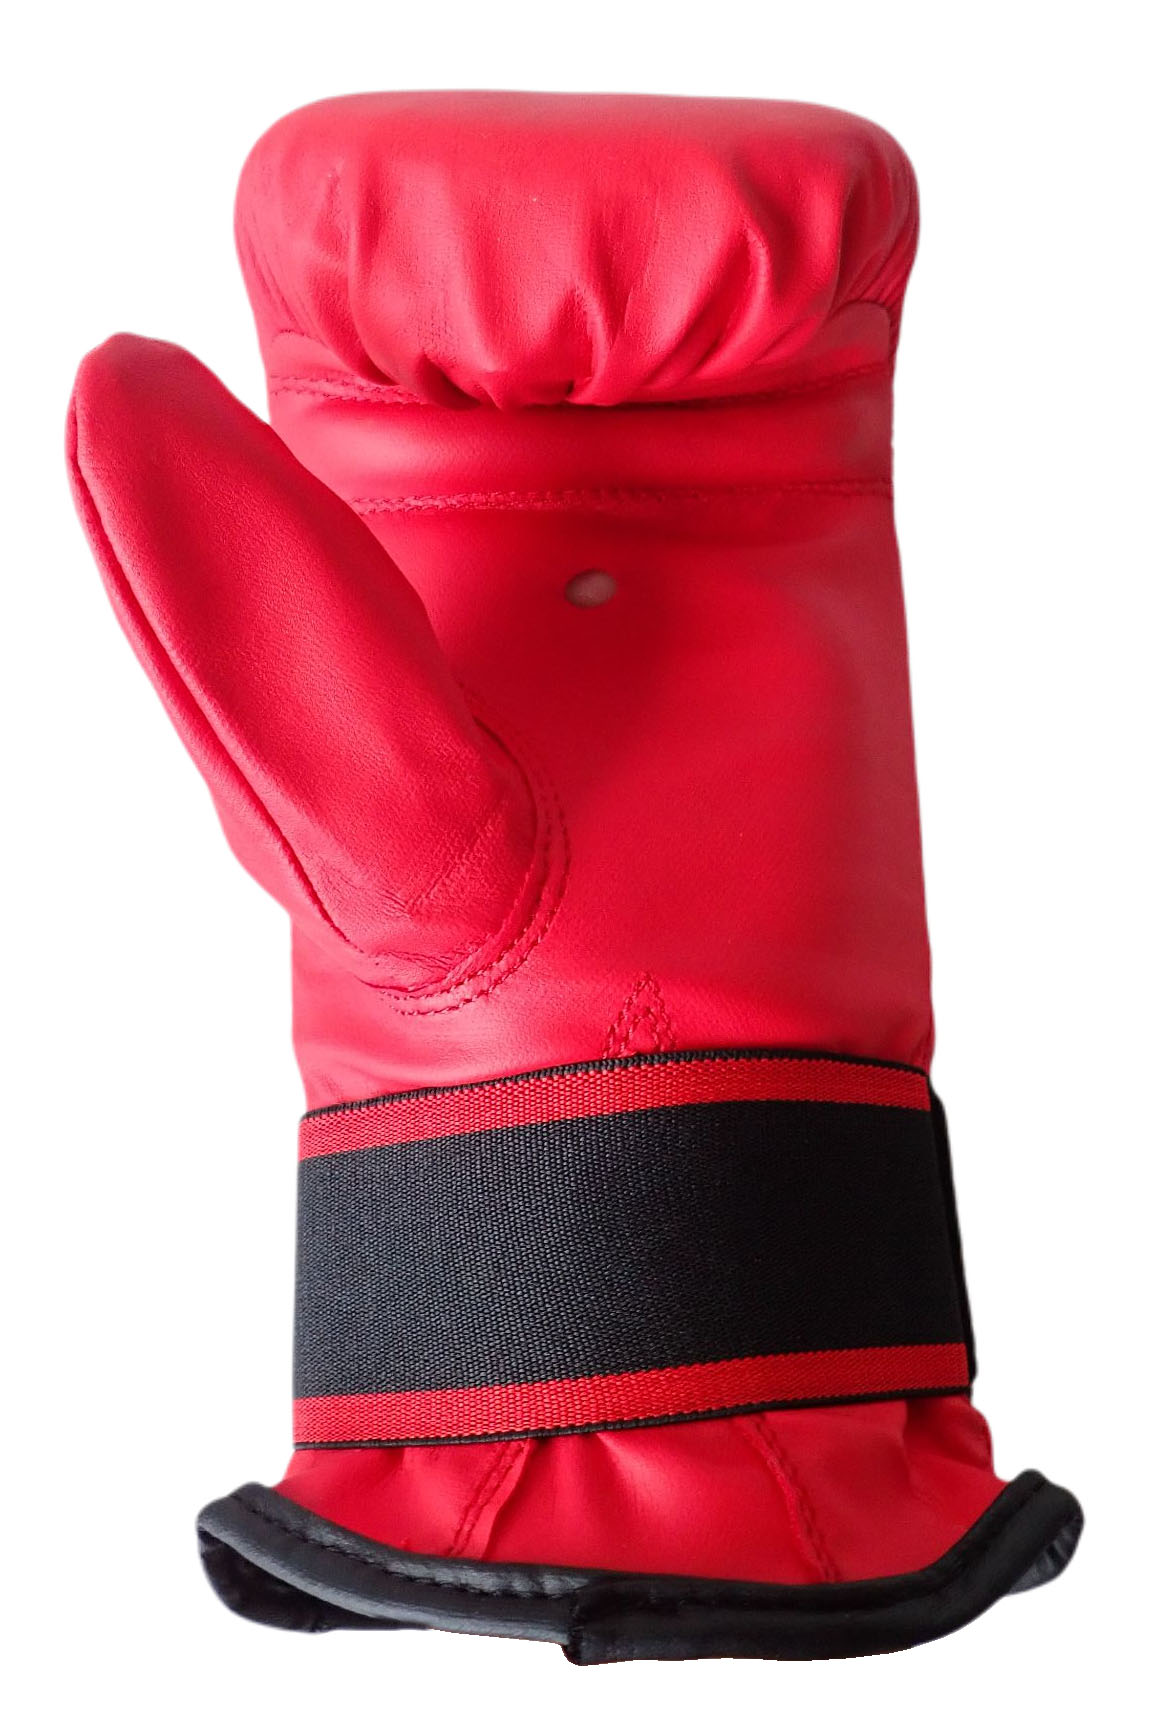 Boxerské rukavice tréninkové pytlovky, vel. L